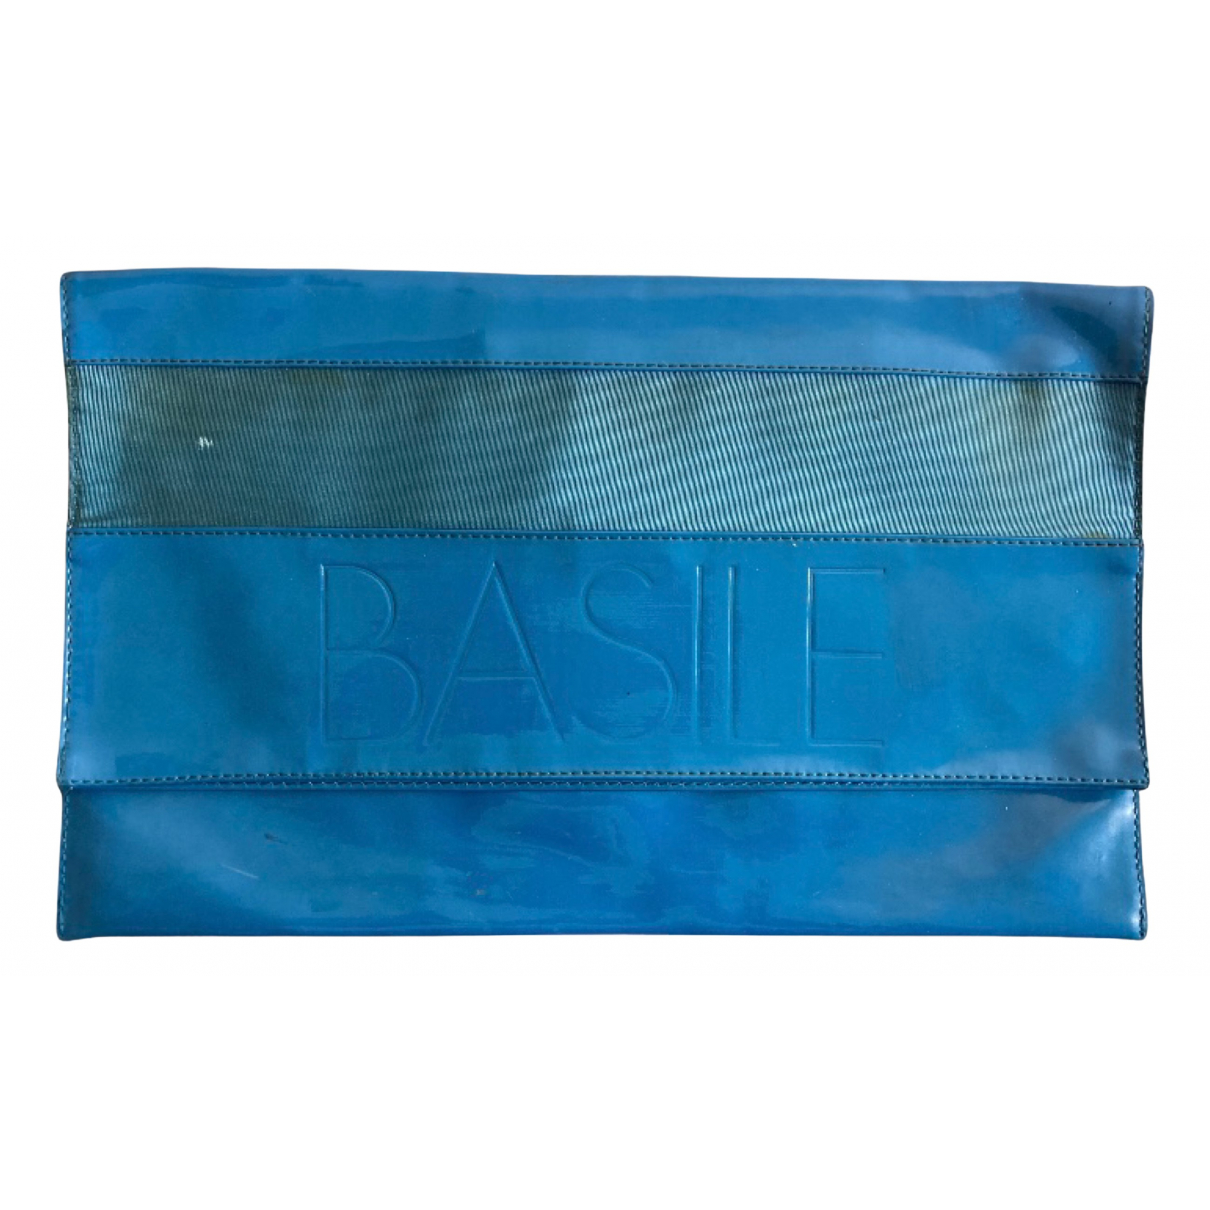 Basile Patent leather clutch bag - Basile - Modalova